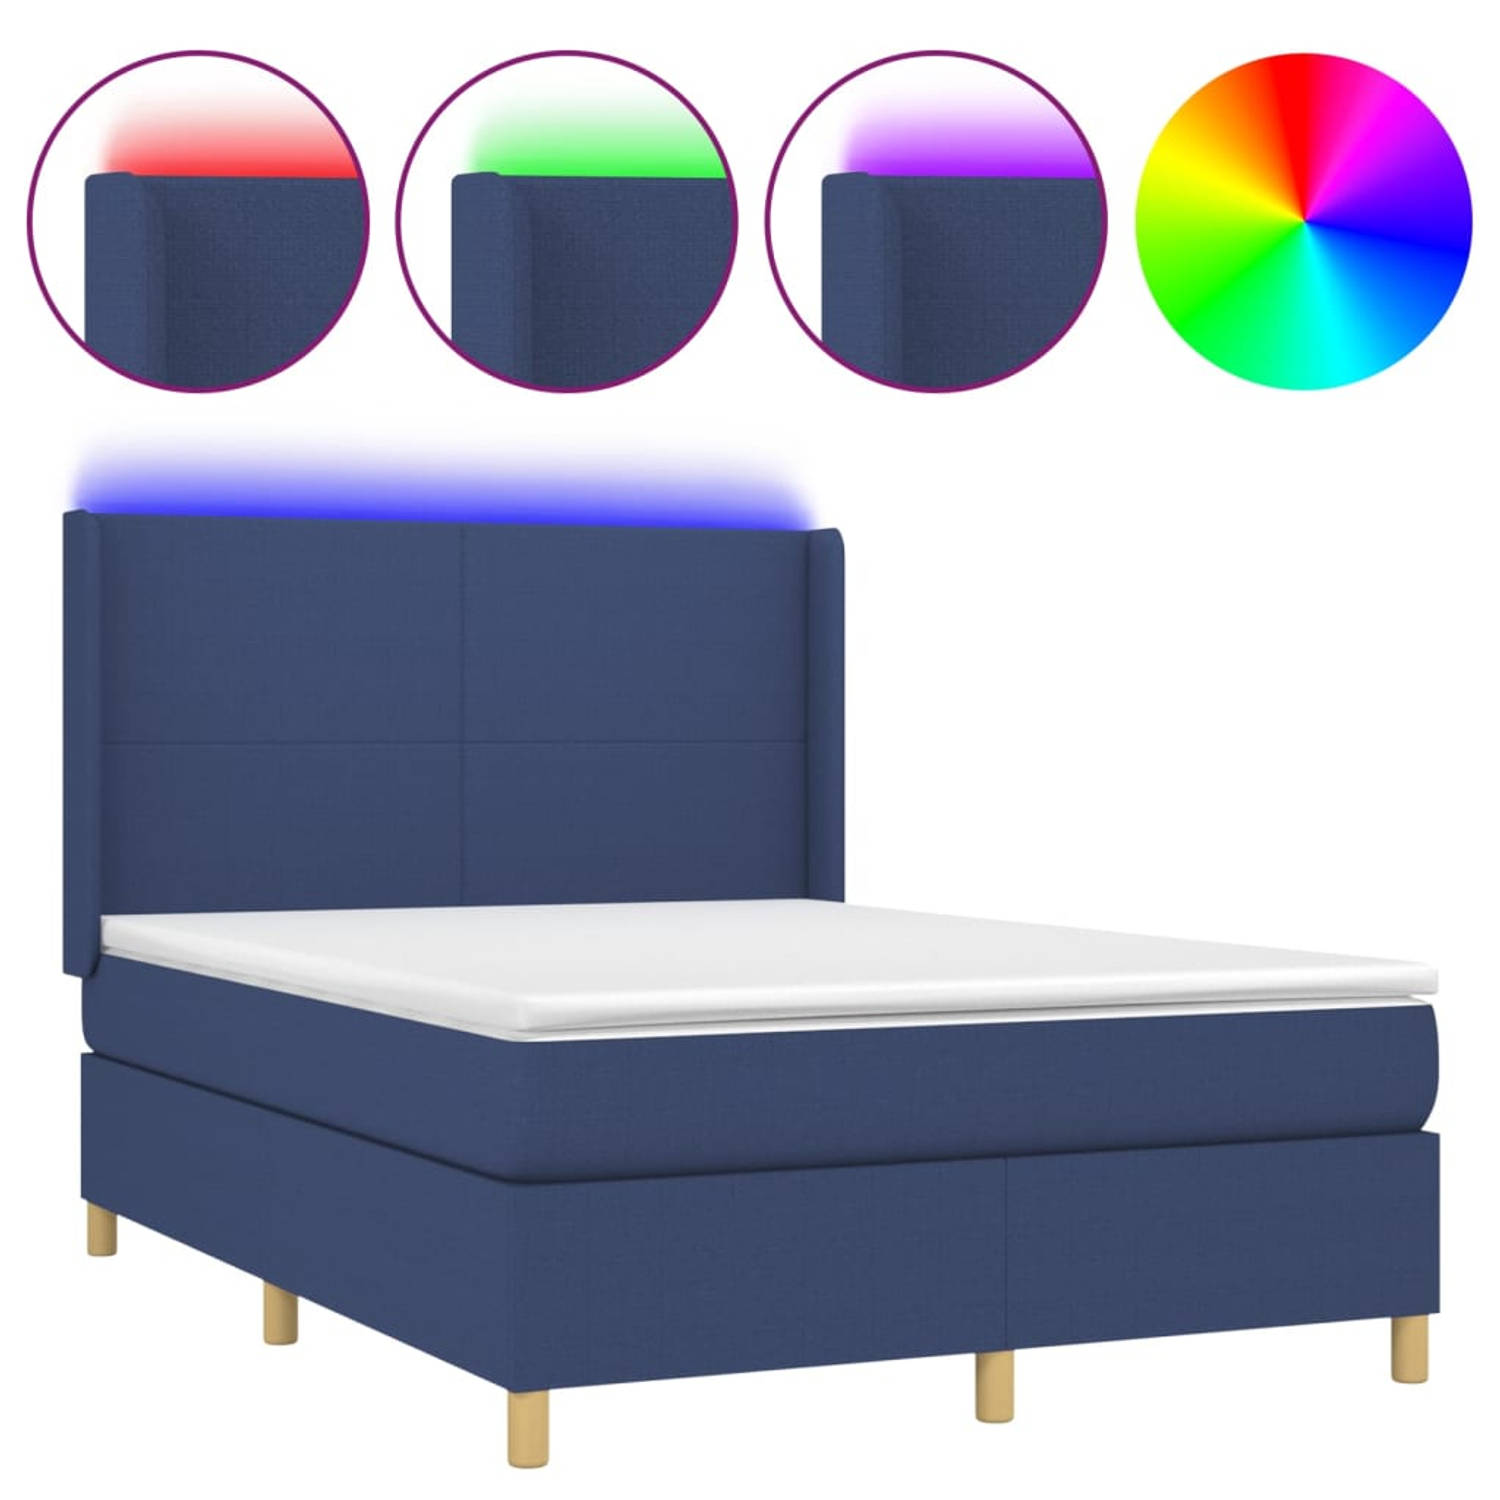 The Living Store Bed Blauw - Stof 100% polyester - Afmetingen 203 x 147 x 118/128 cm - LED-verlichting - Pocketvering matras - Huidvriendelijk topmatras - Inclusief montagehandleid